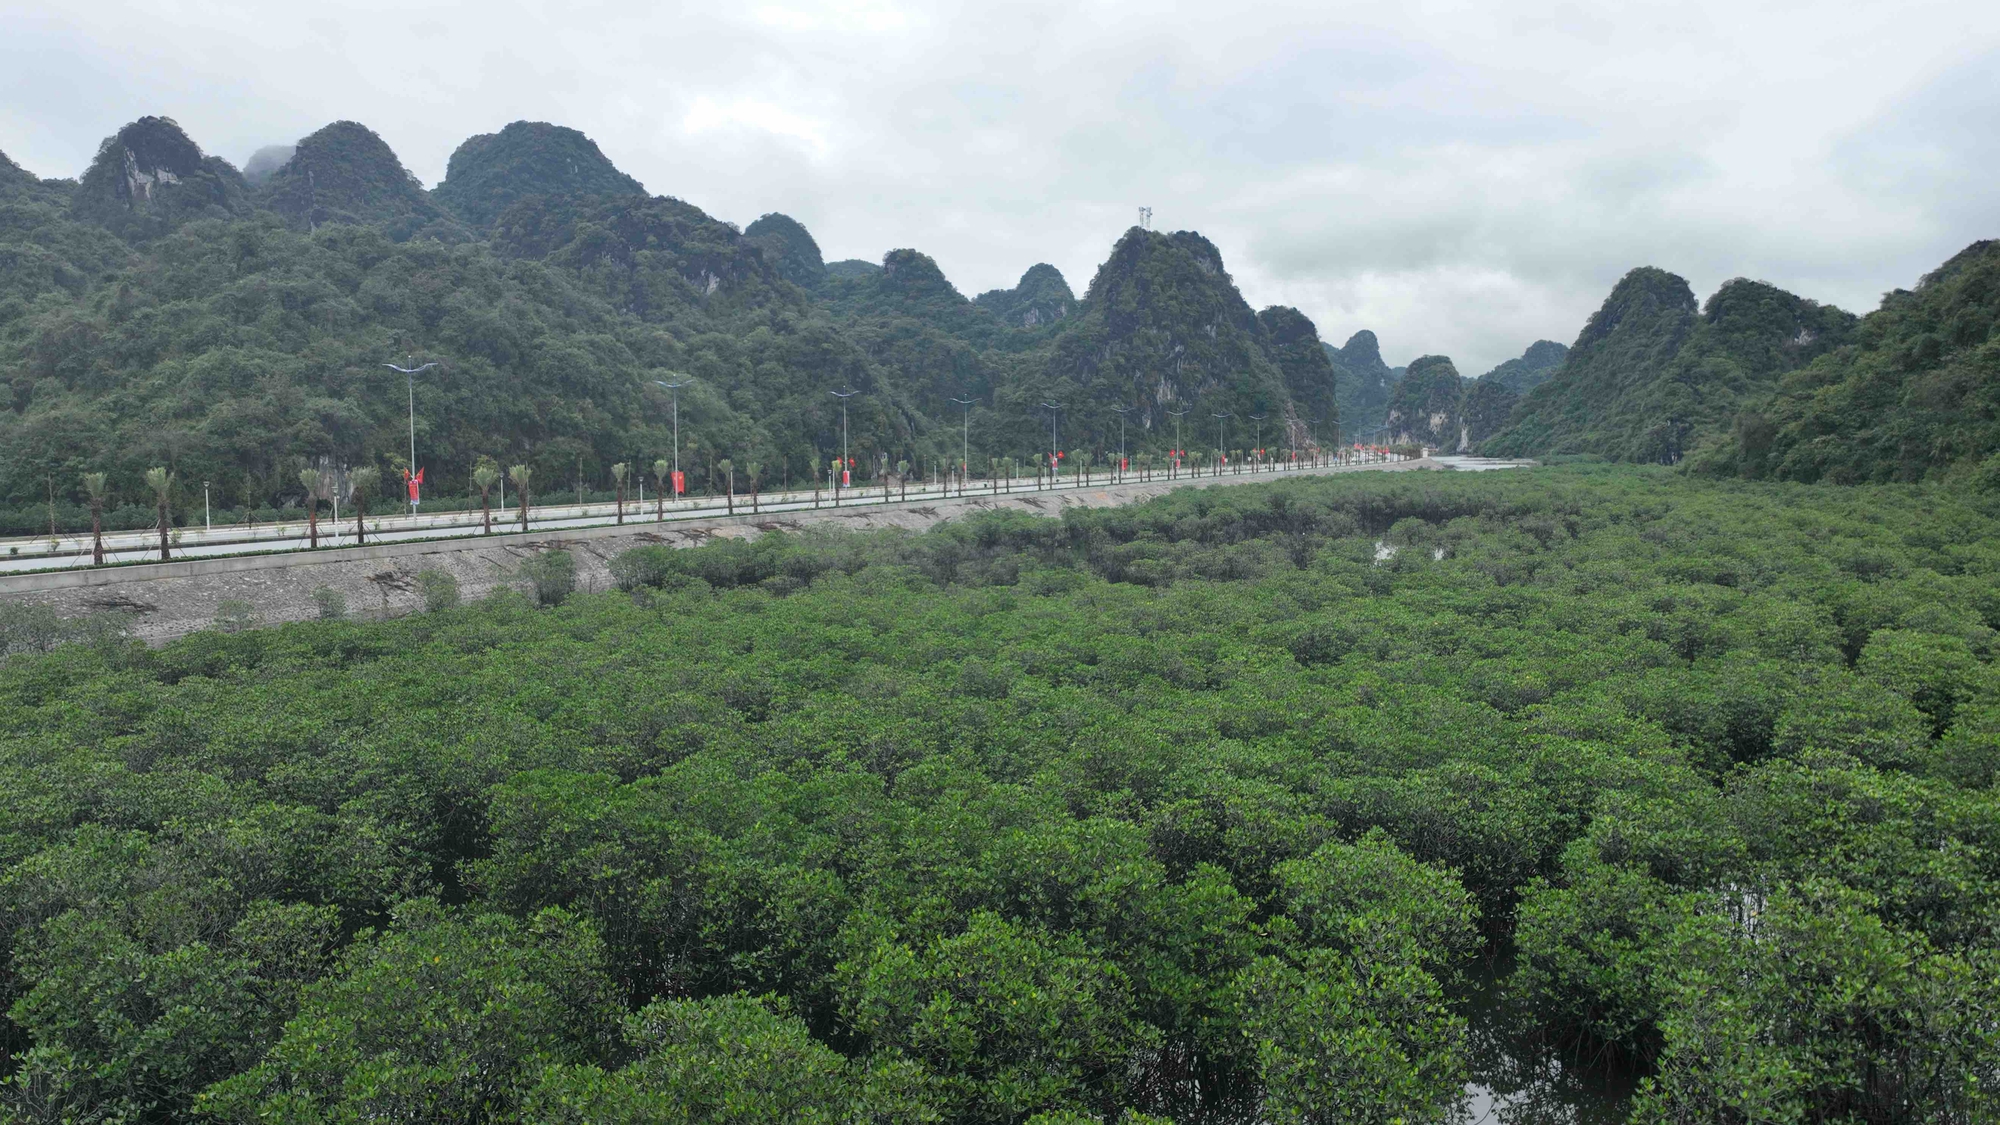 Quảng Ninh lần 2 khánh thành đường bao biển Hạ Long - Cẩm Phả  - Ảnh 4.